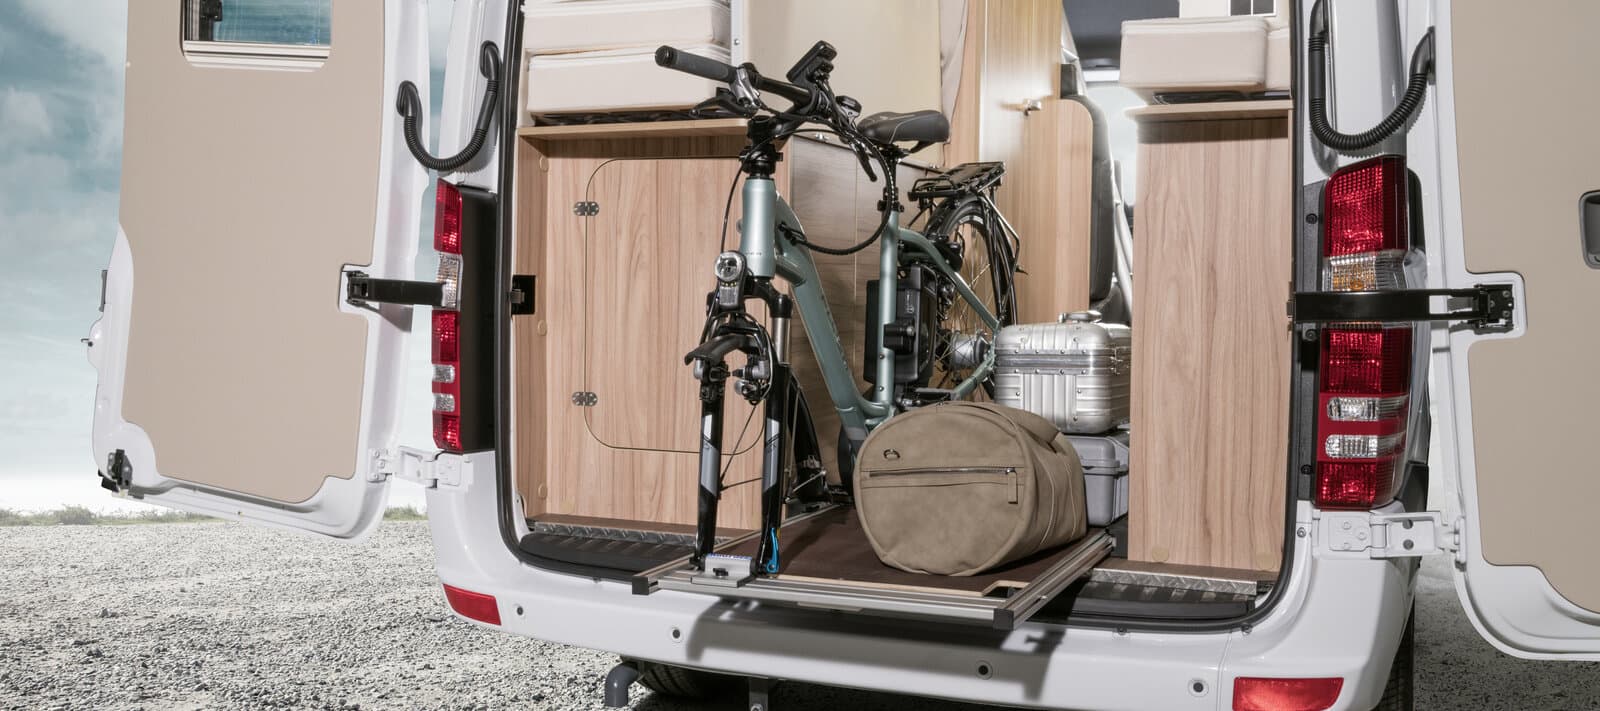 Accessoires et équipement pour van, fourgon aménagé & camping car